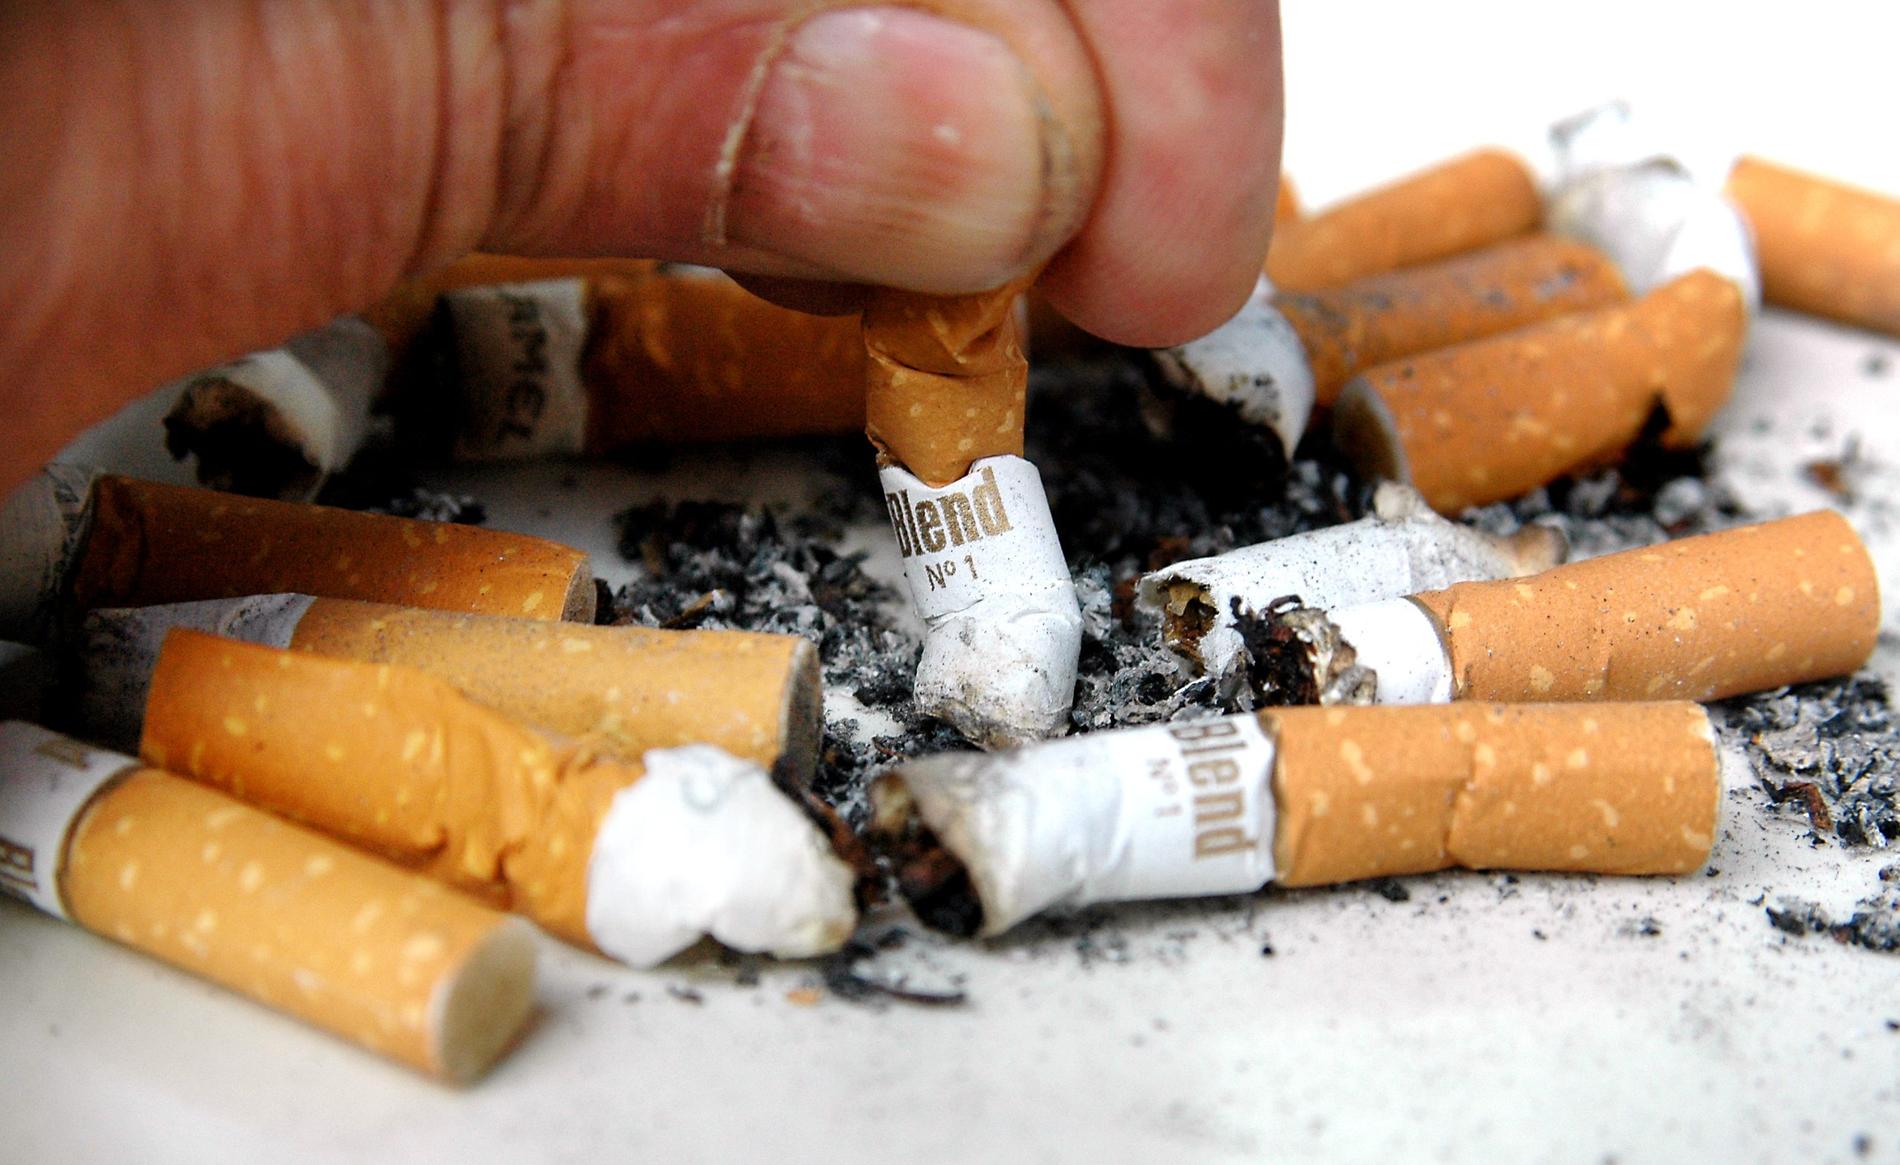 Sex miljoner cigarretter har förts in till Sverige och undanhållits från skatt, enligt åtalet i Eksjö tingsrätt.